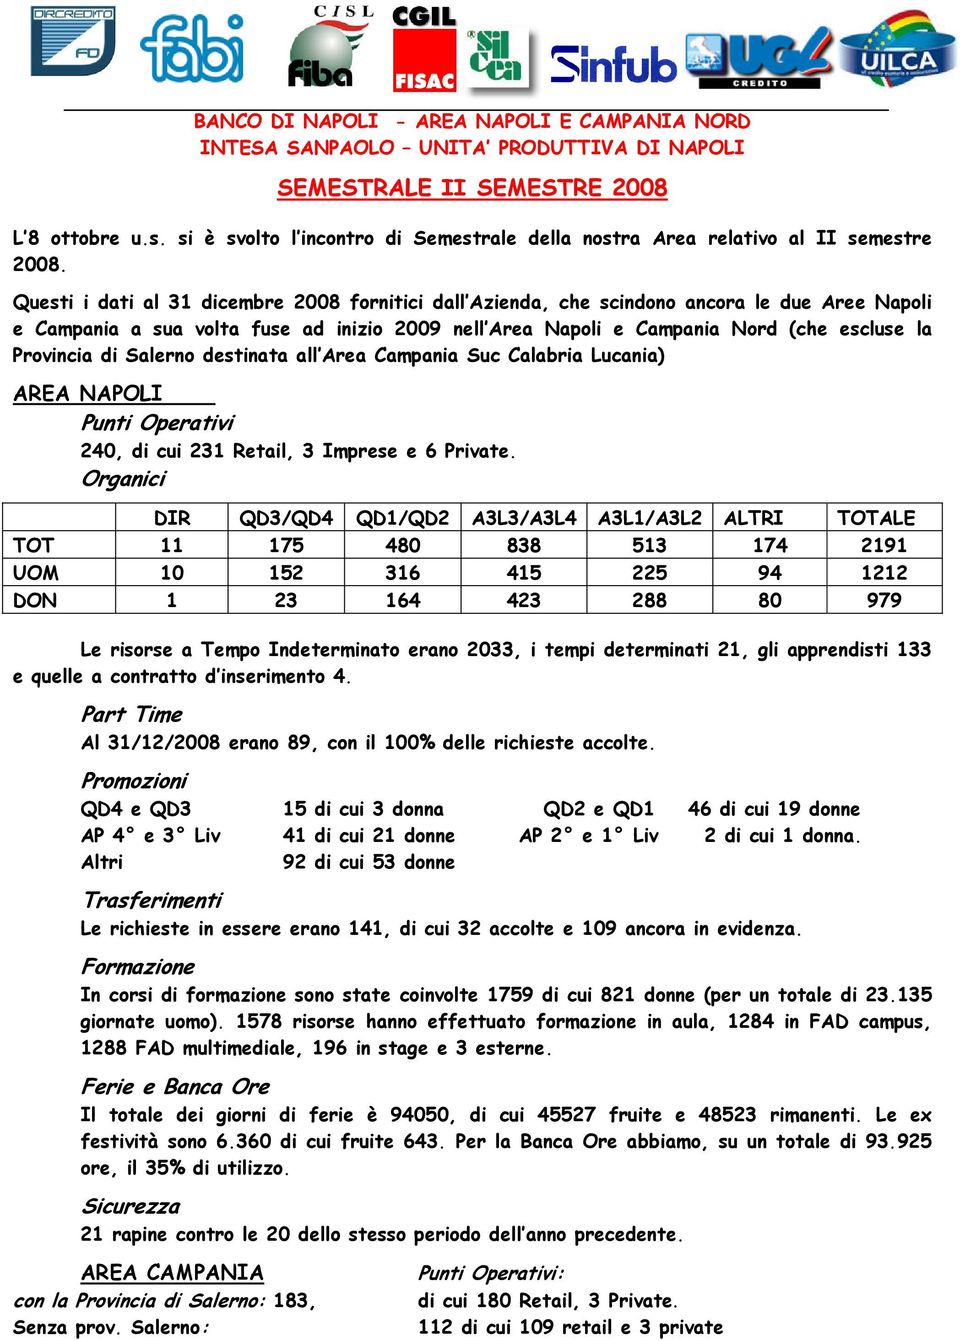 Questi i dati al 31 dicembre 2008 fornitici dall Azienda, che scindono ancora le due Aree Napoli e Campania a sua volta fuse ad inizio 2009 nell Area Napoli e Campania Nord (che escluse la Provincia